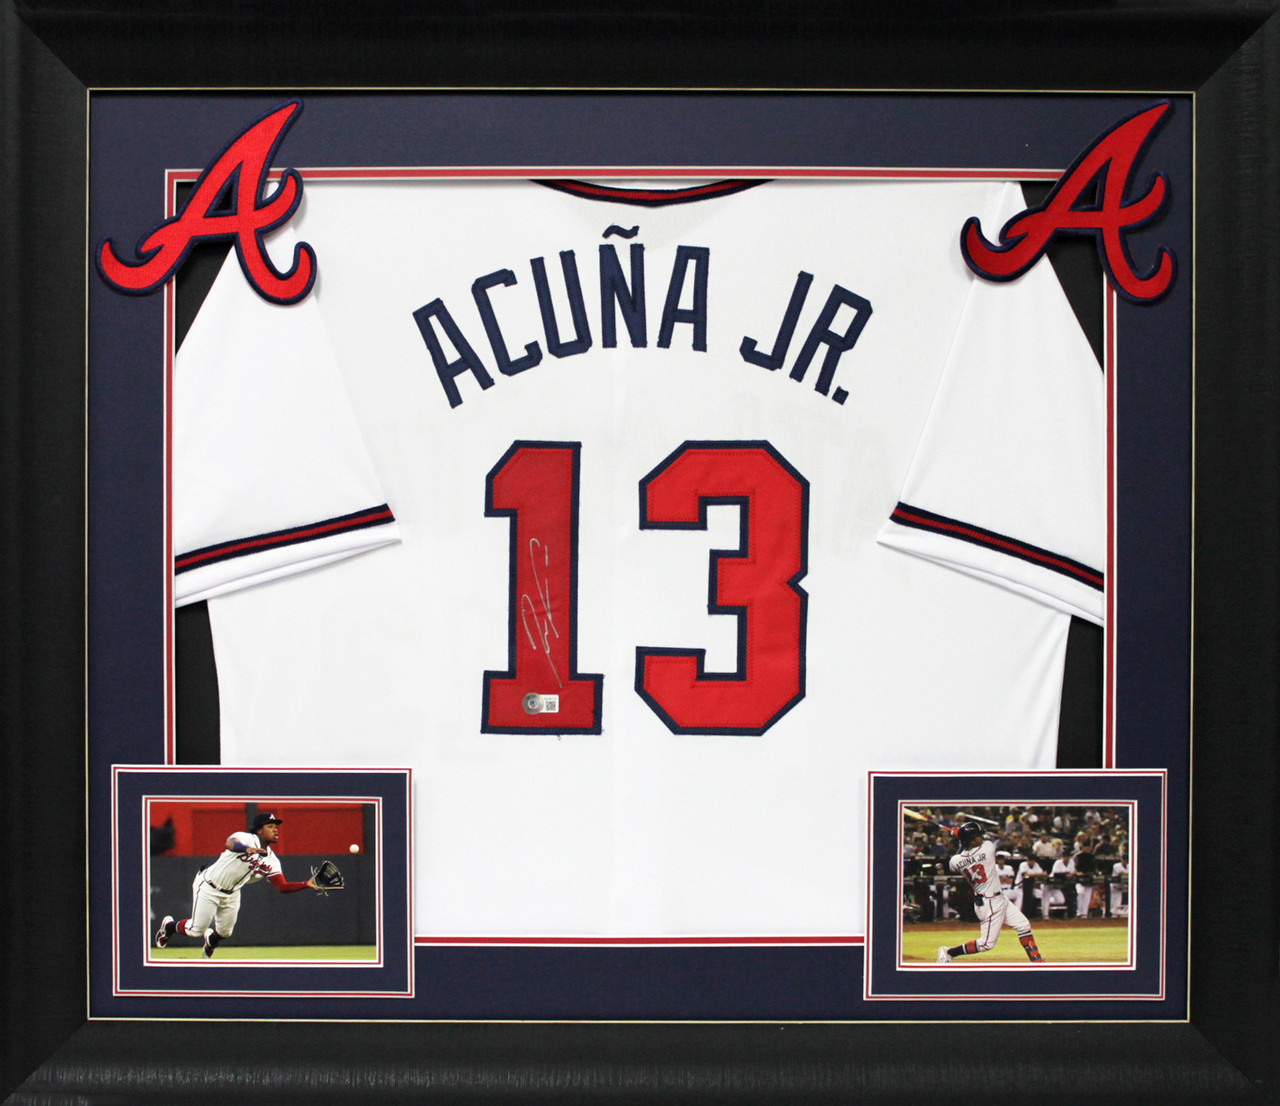 Ronald Acuna Jr. Signed Braves Jersey (JSA & USA)